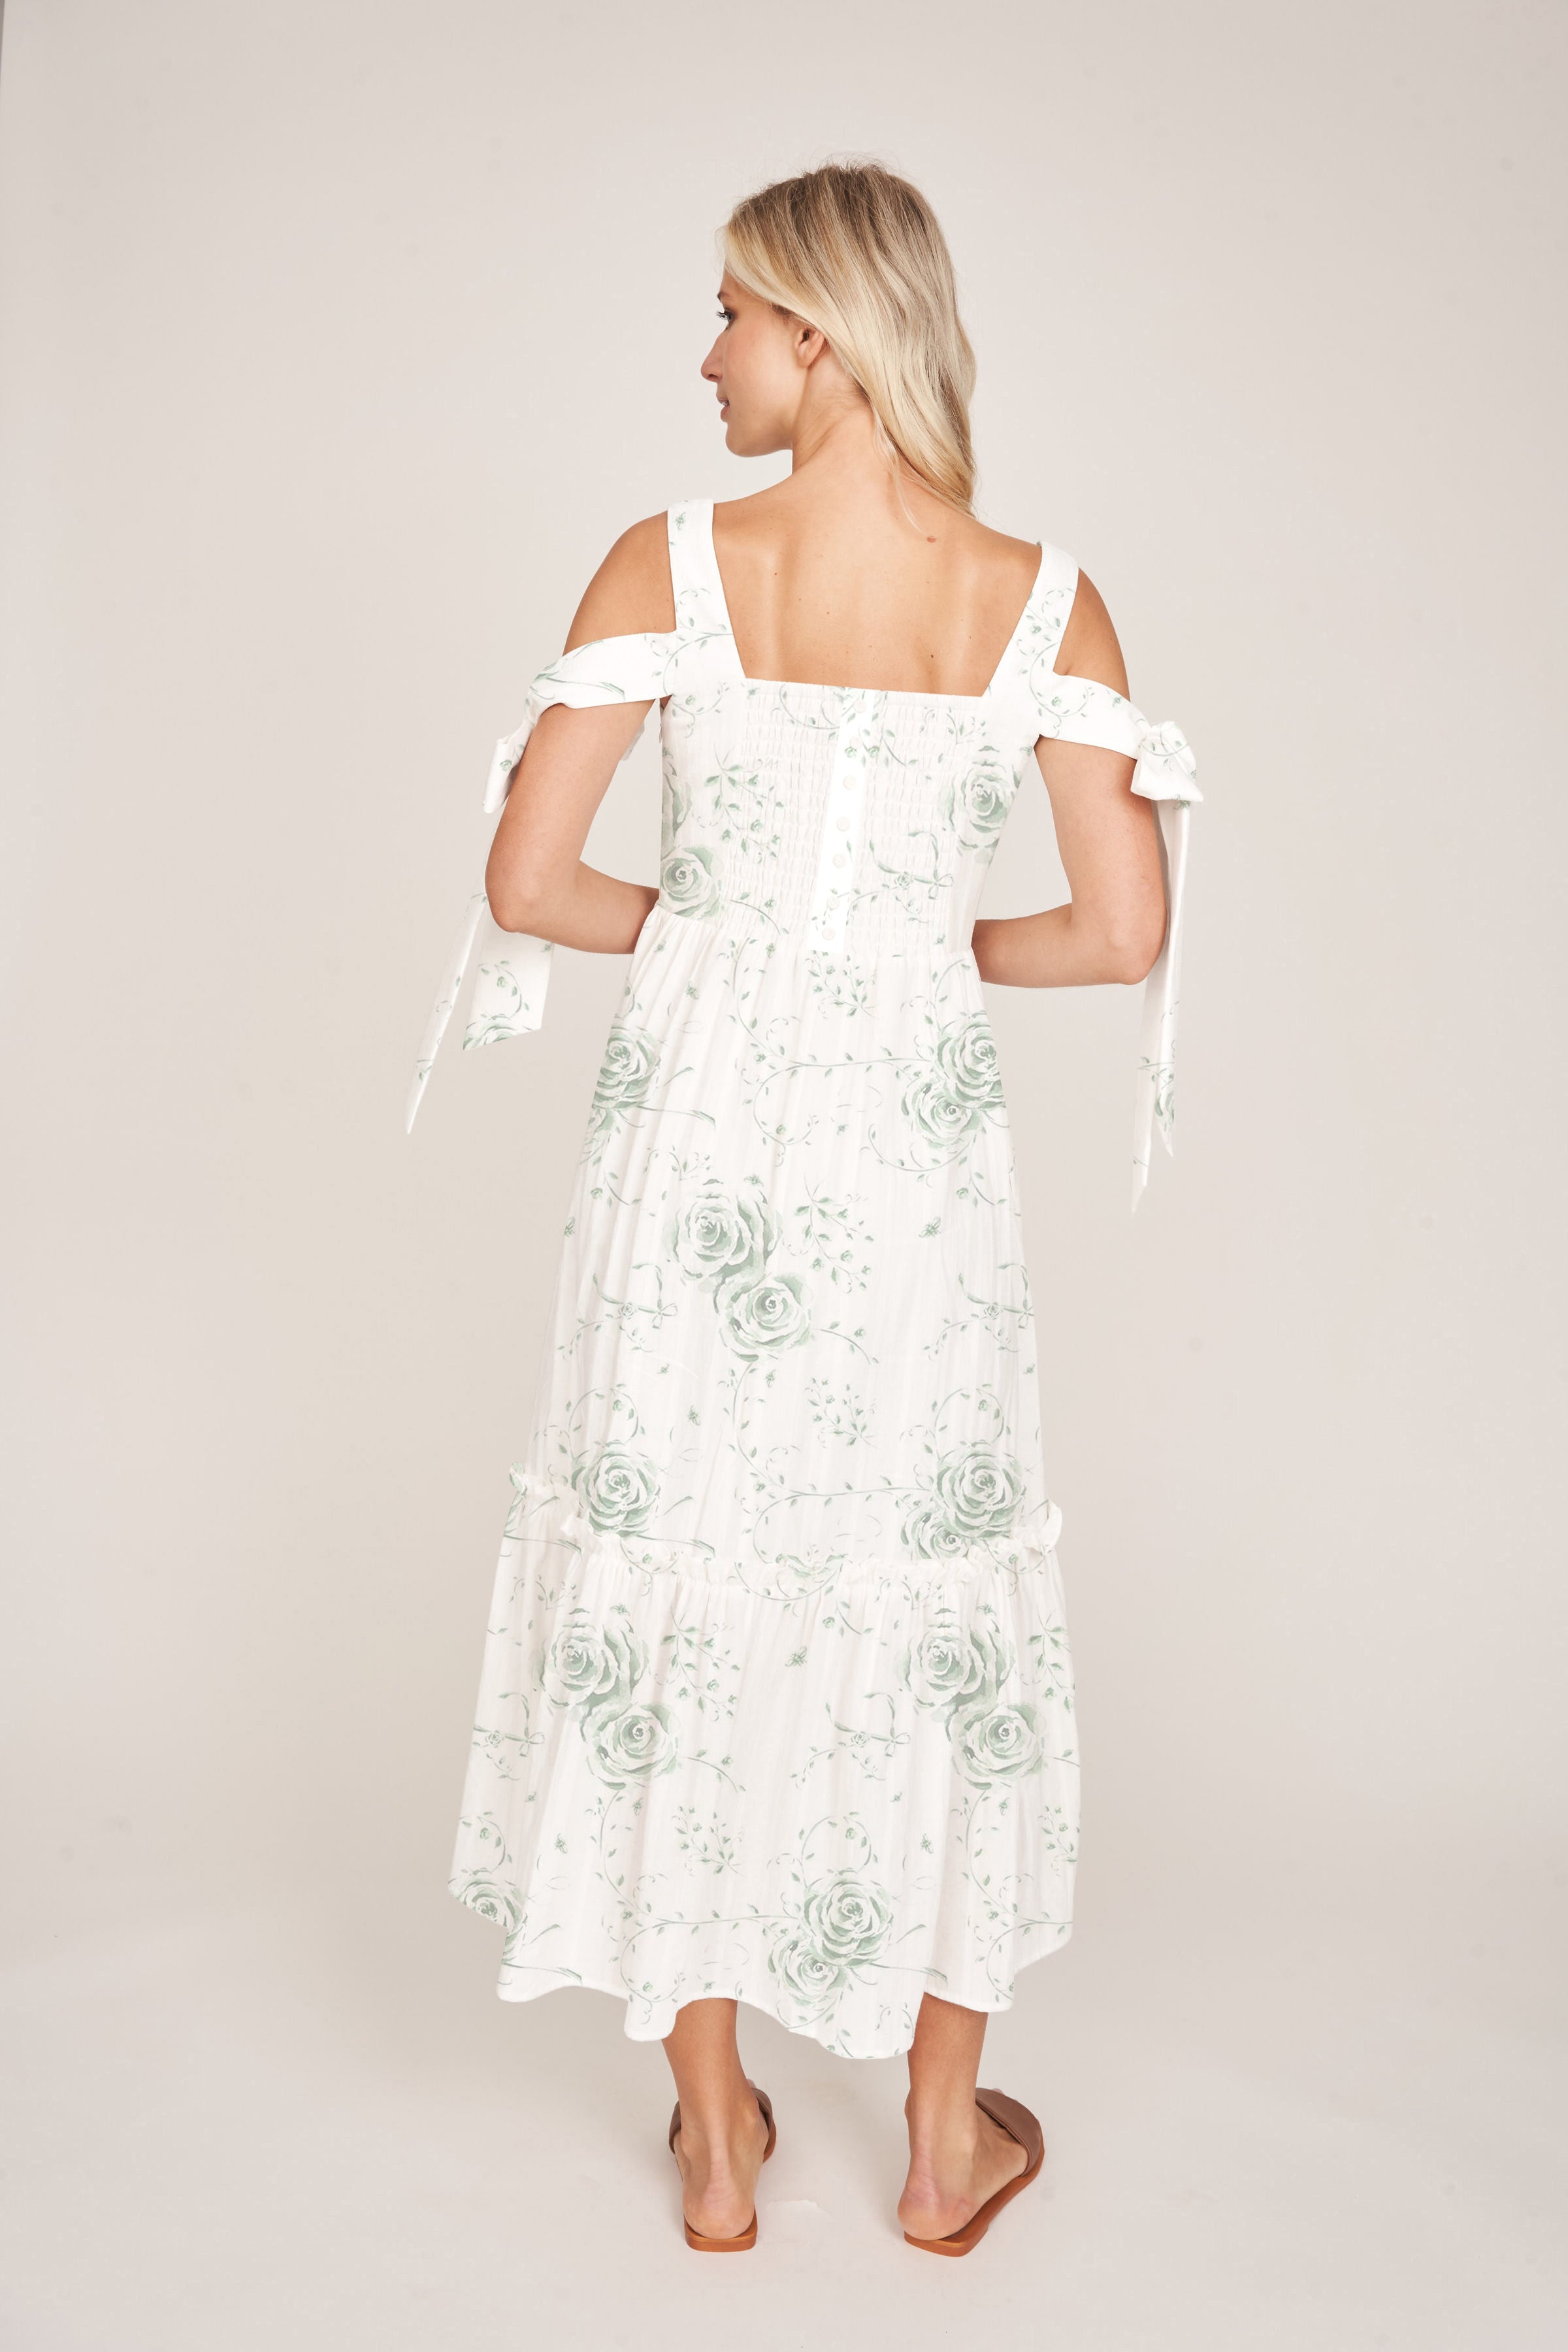 The Audrey Dress by Floraison